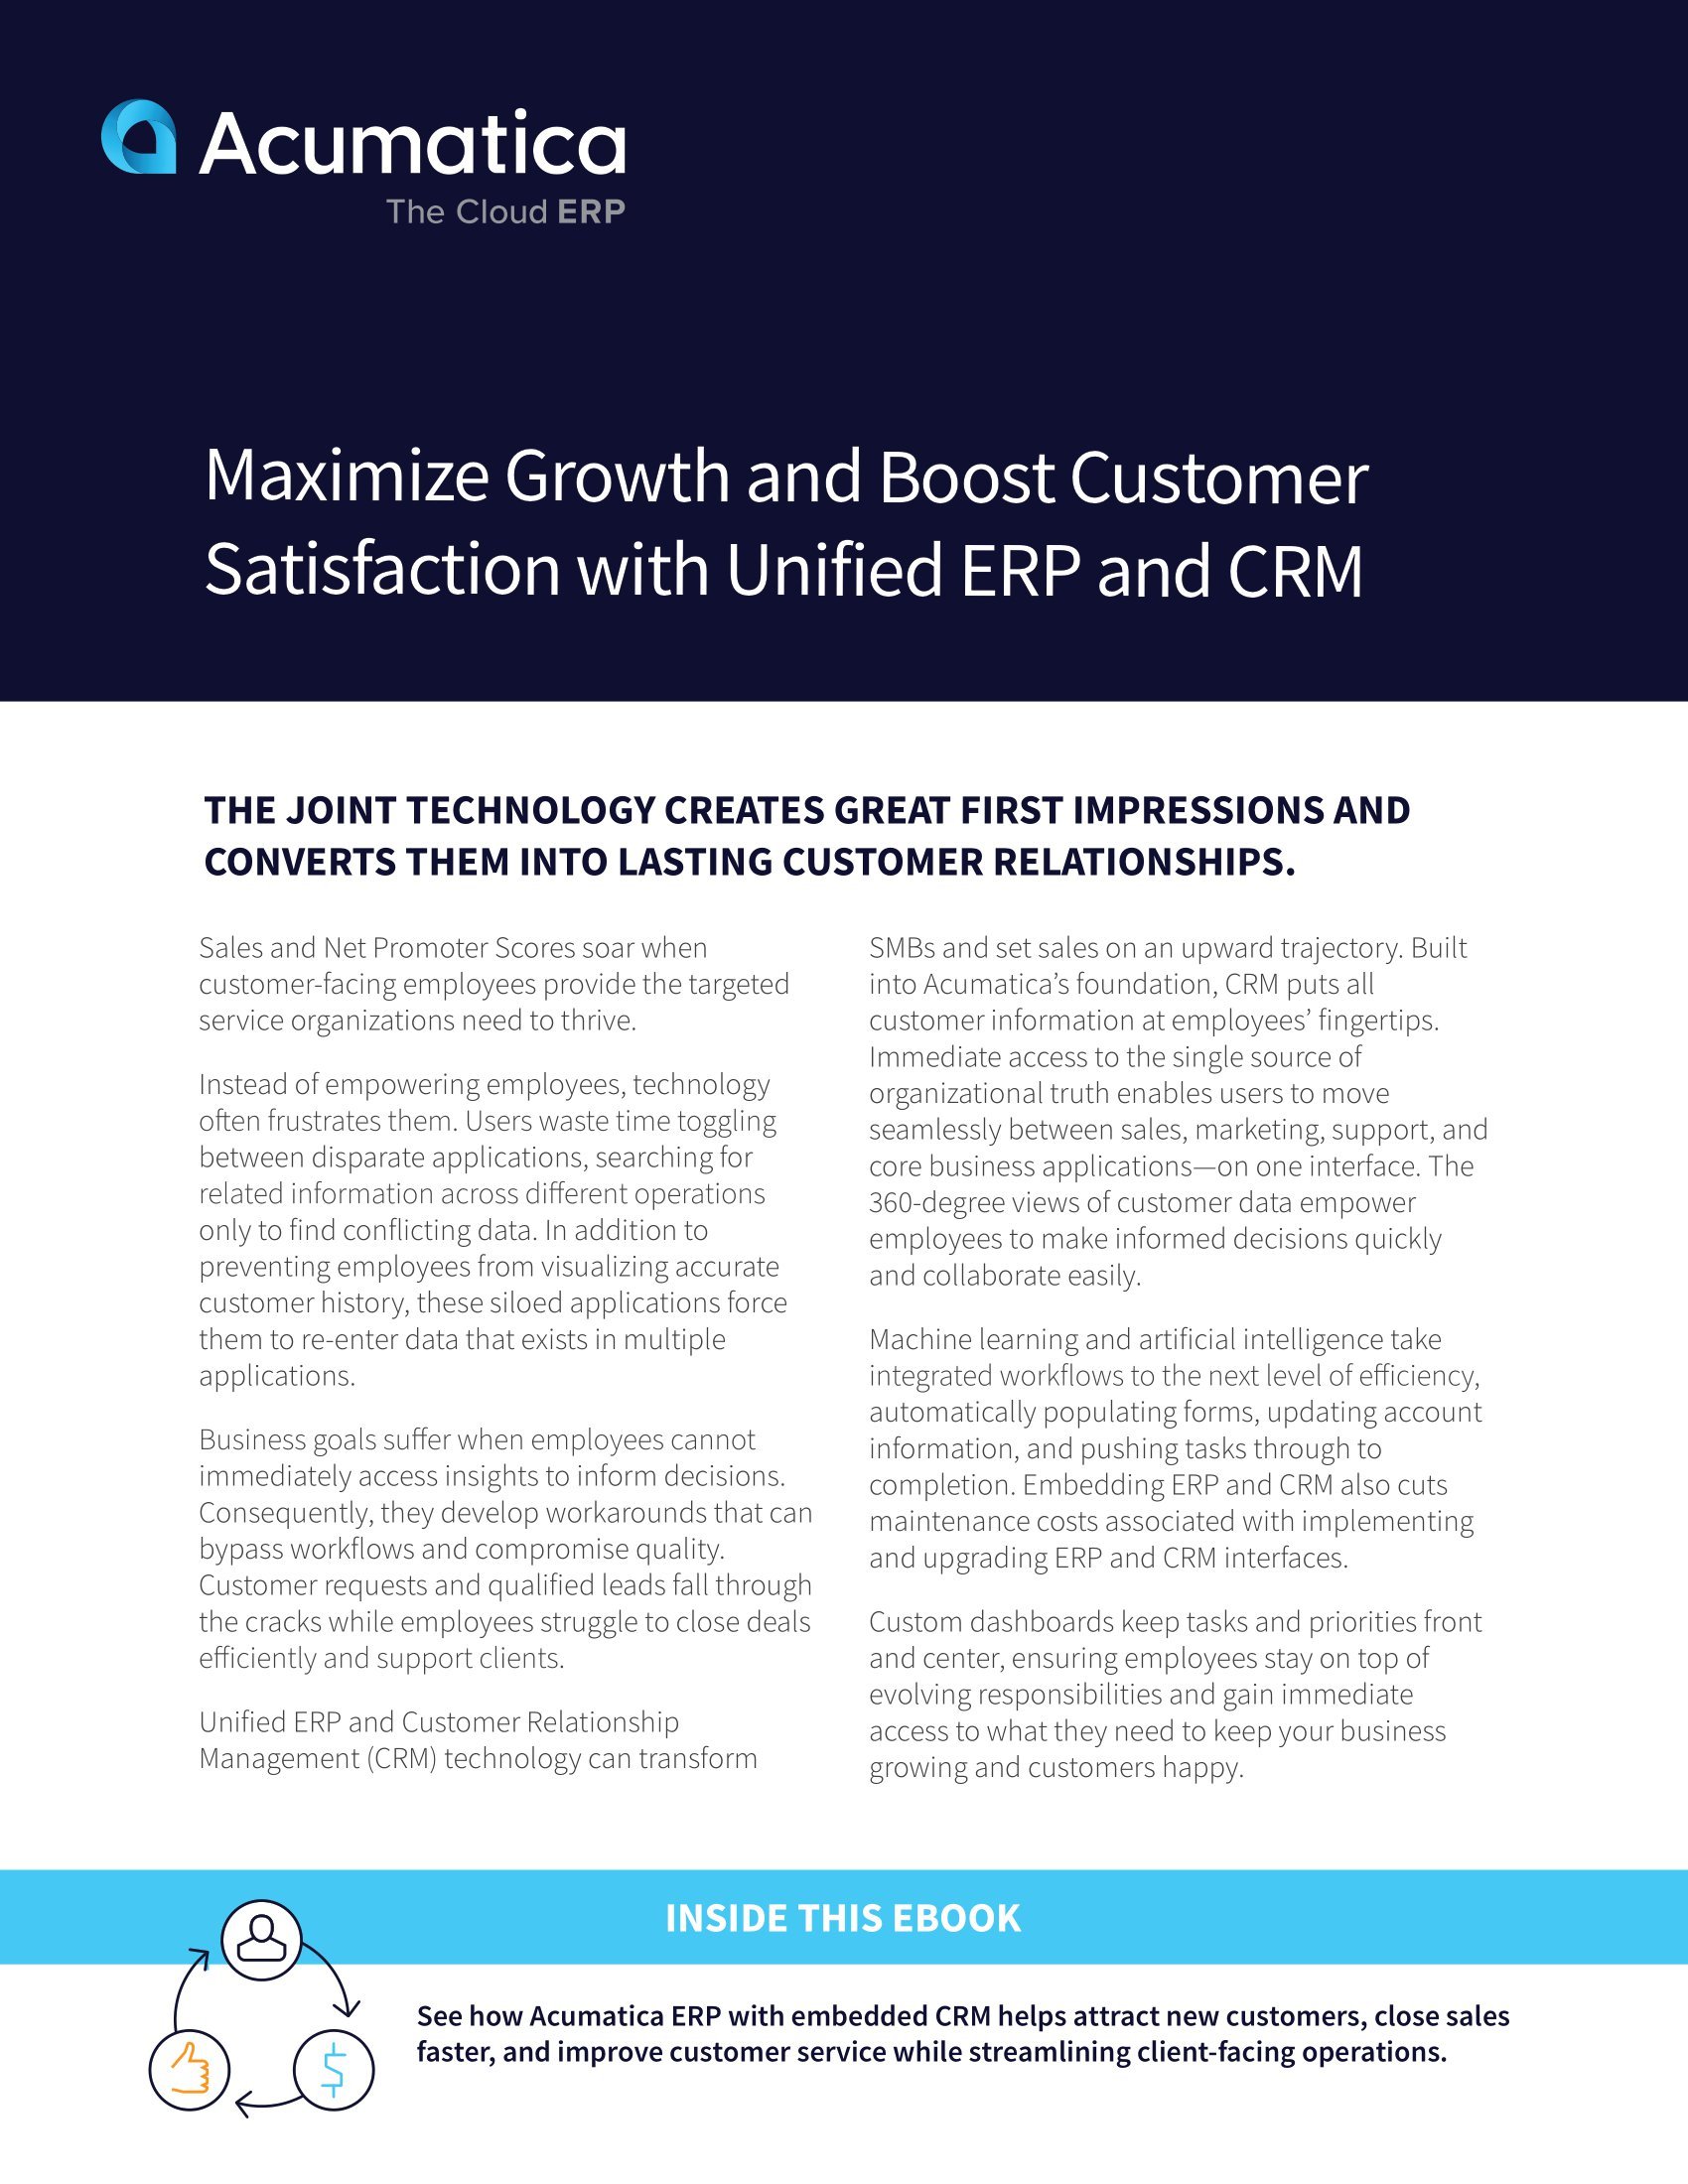 Utiliser l'ERP avec le CRM pour maximiser la croissance